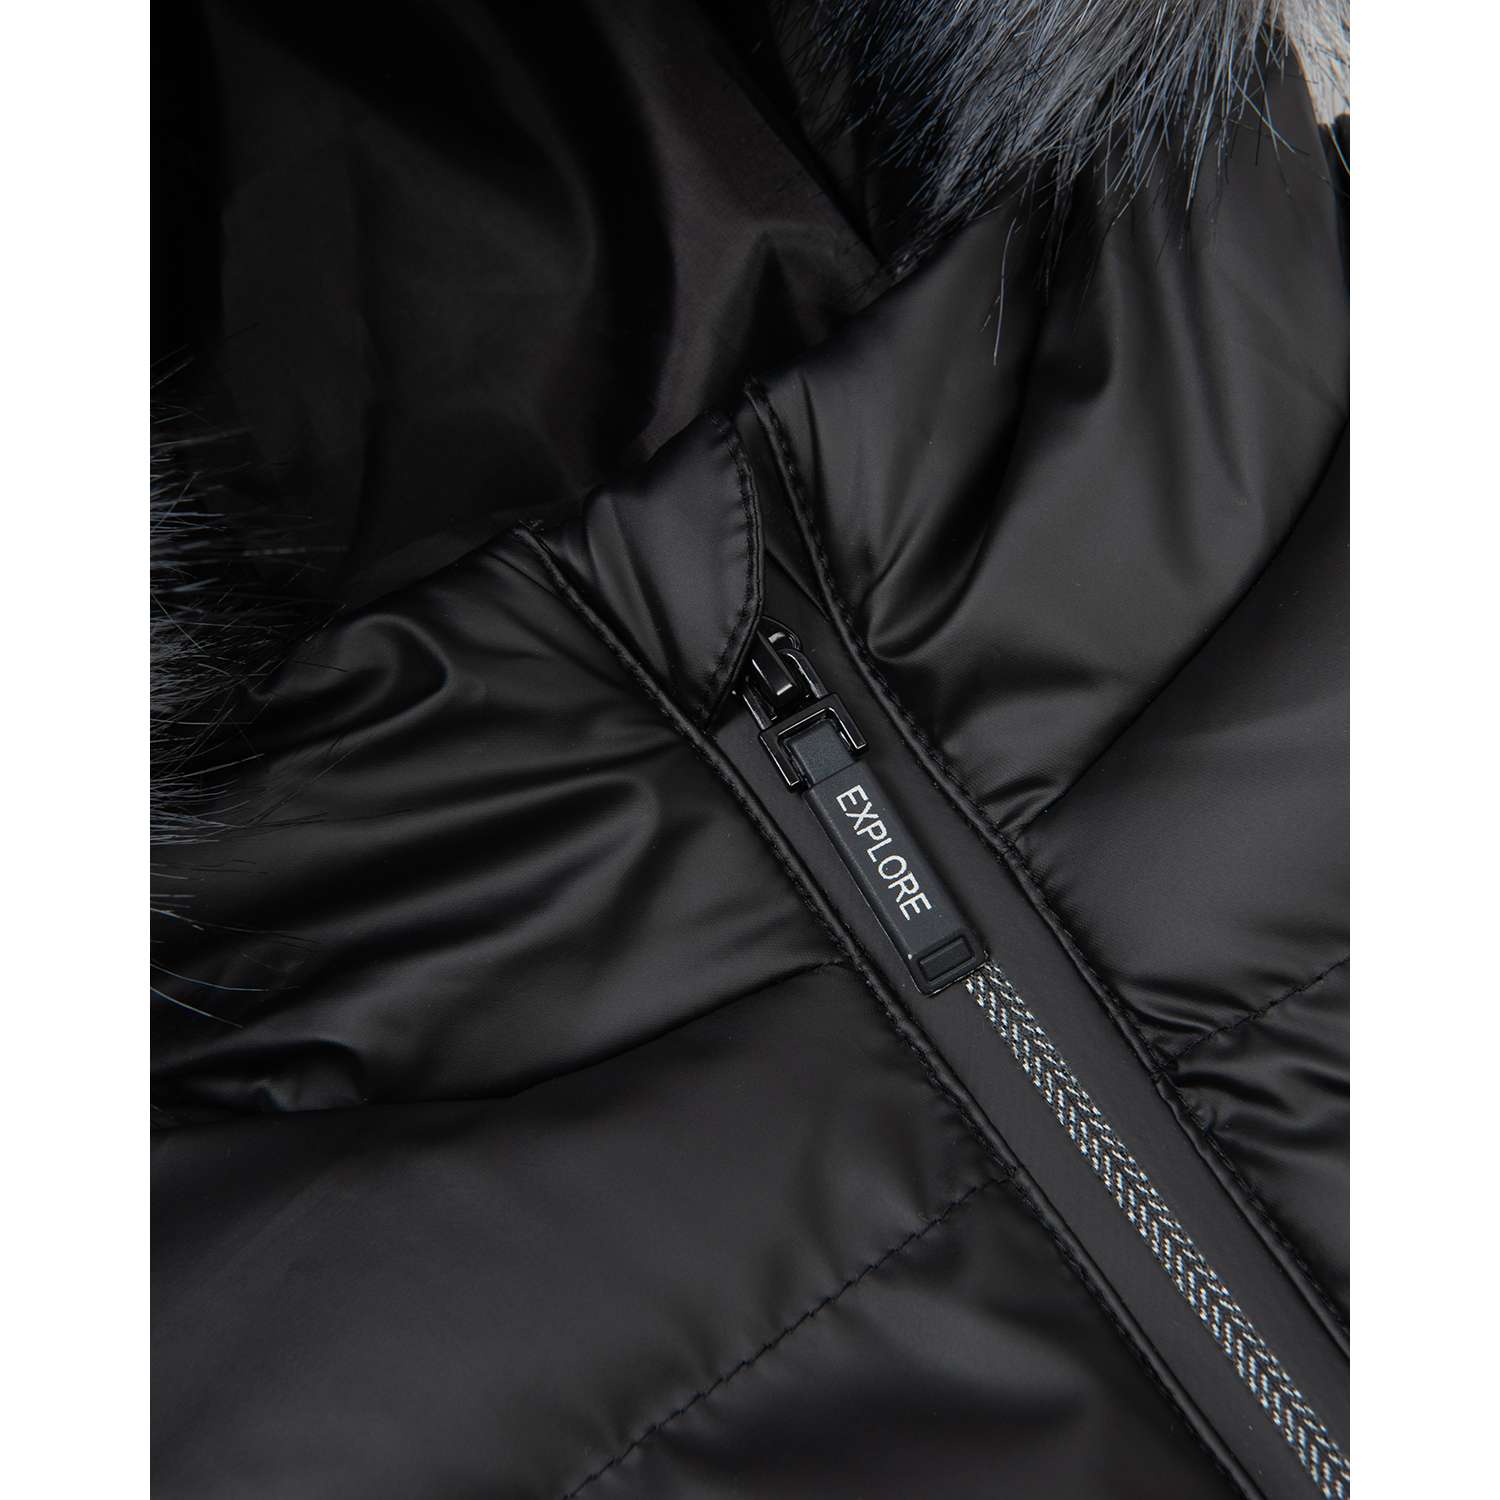 Куртка Futurino Cool W22FC5-B75tb-99 - фото 7